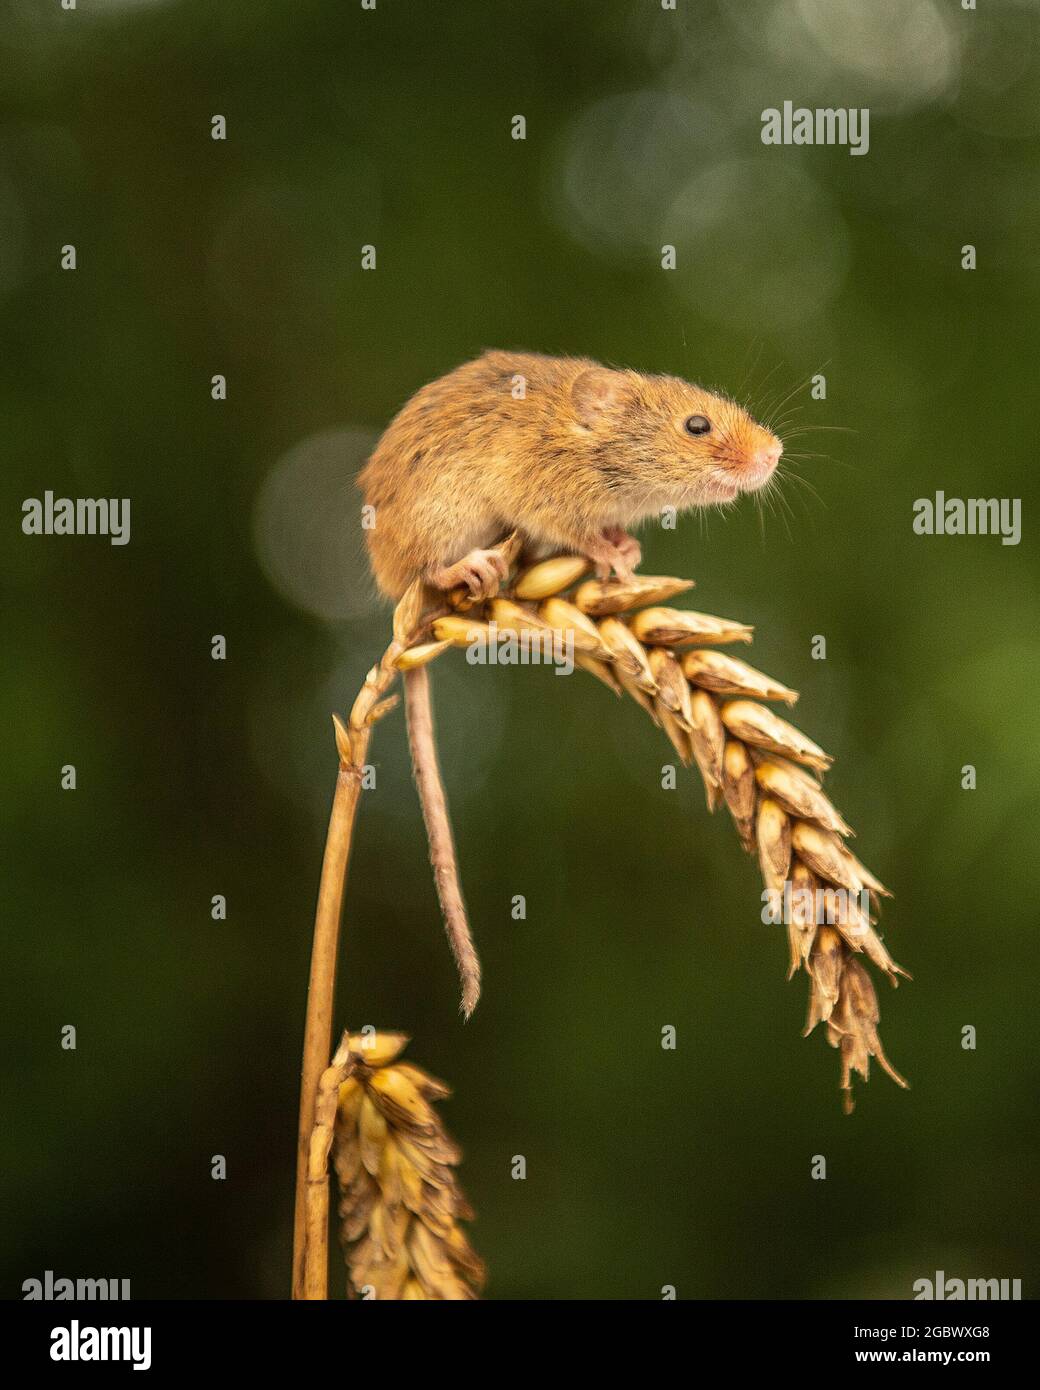 Ratón de cosecha, Micromys minutus sentado en la oreja de trigo Foto de stock